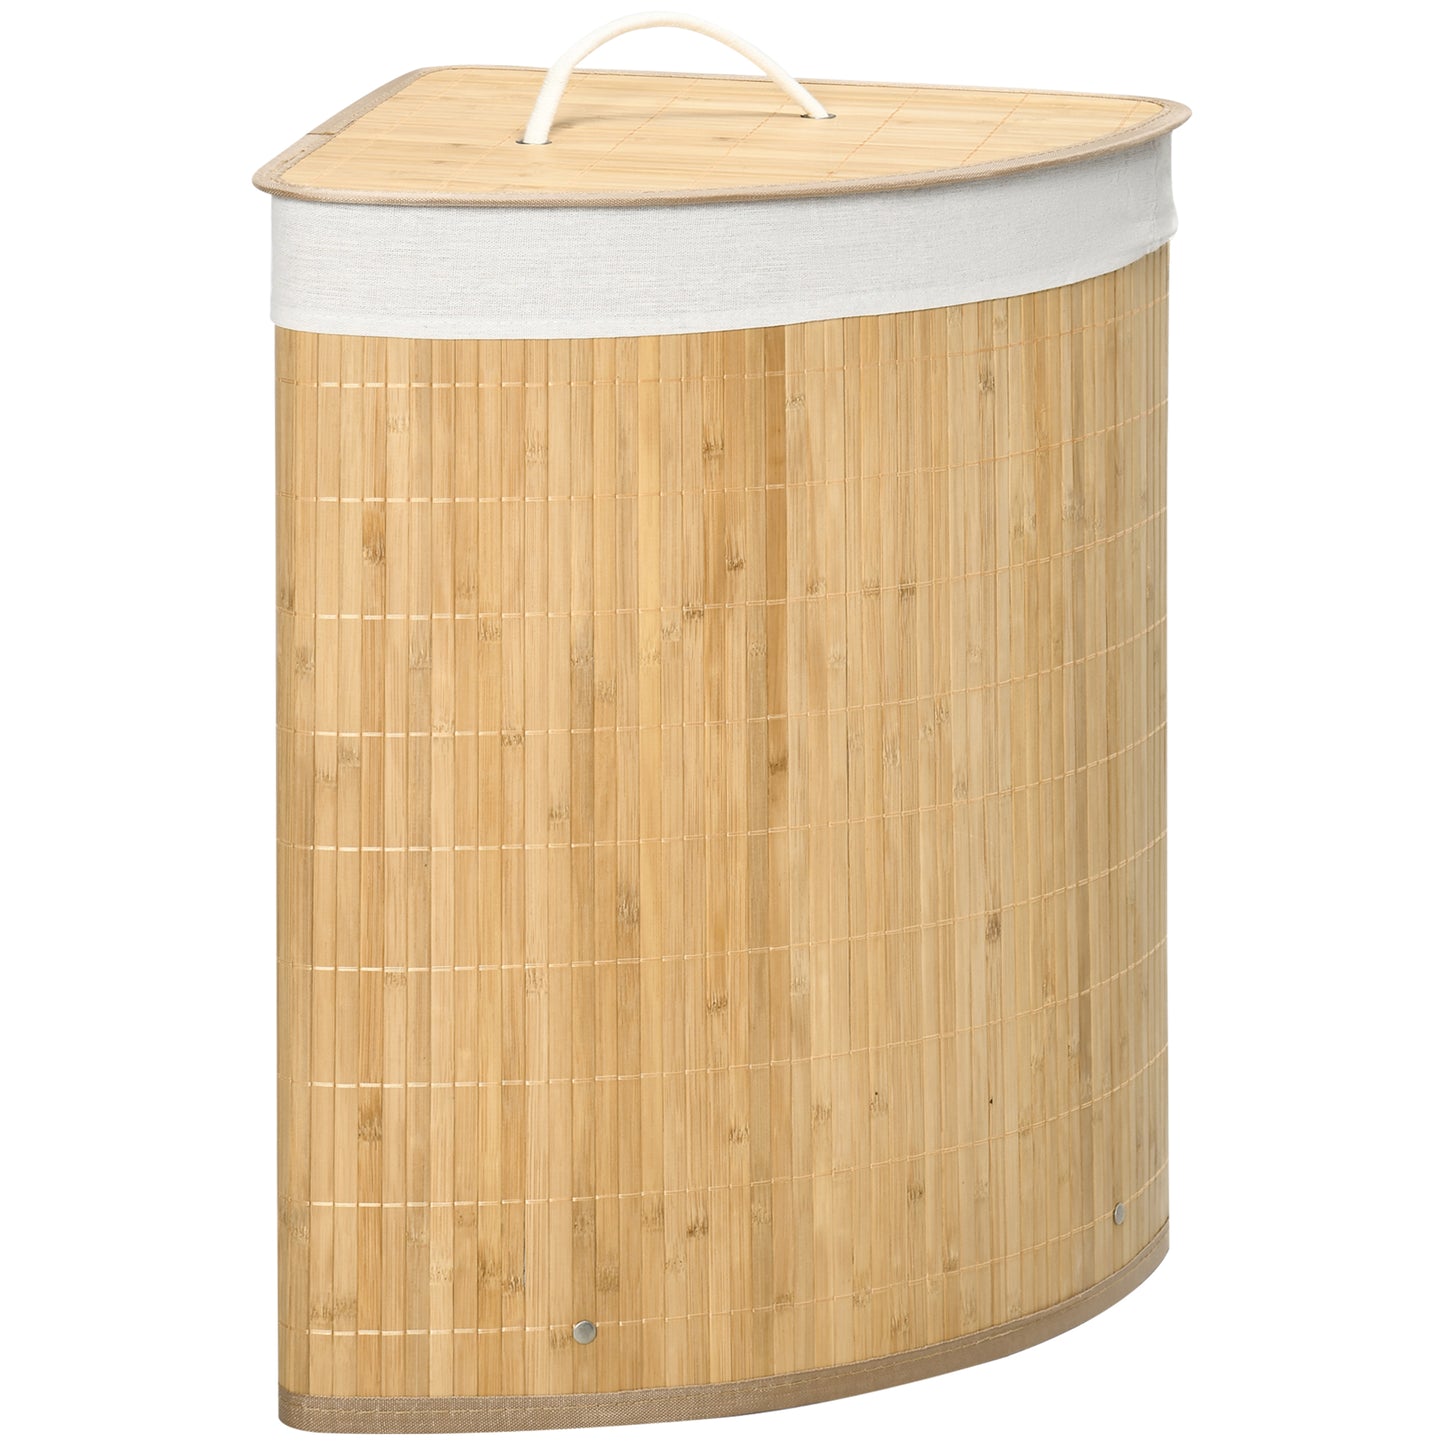 HOMCOM Cesto para Ropa Sucia de Bambú Capacidad de 55L Cesta para la Colada en Forma de Abanico con Tapa y Bolsa Extraíble 38x38x57 cm Natural